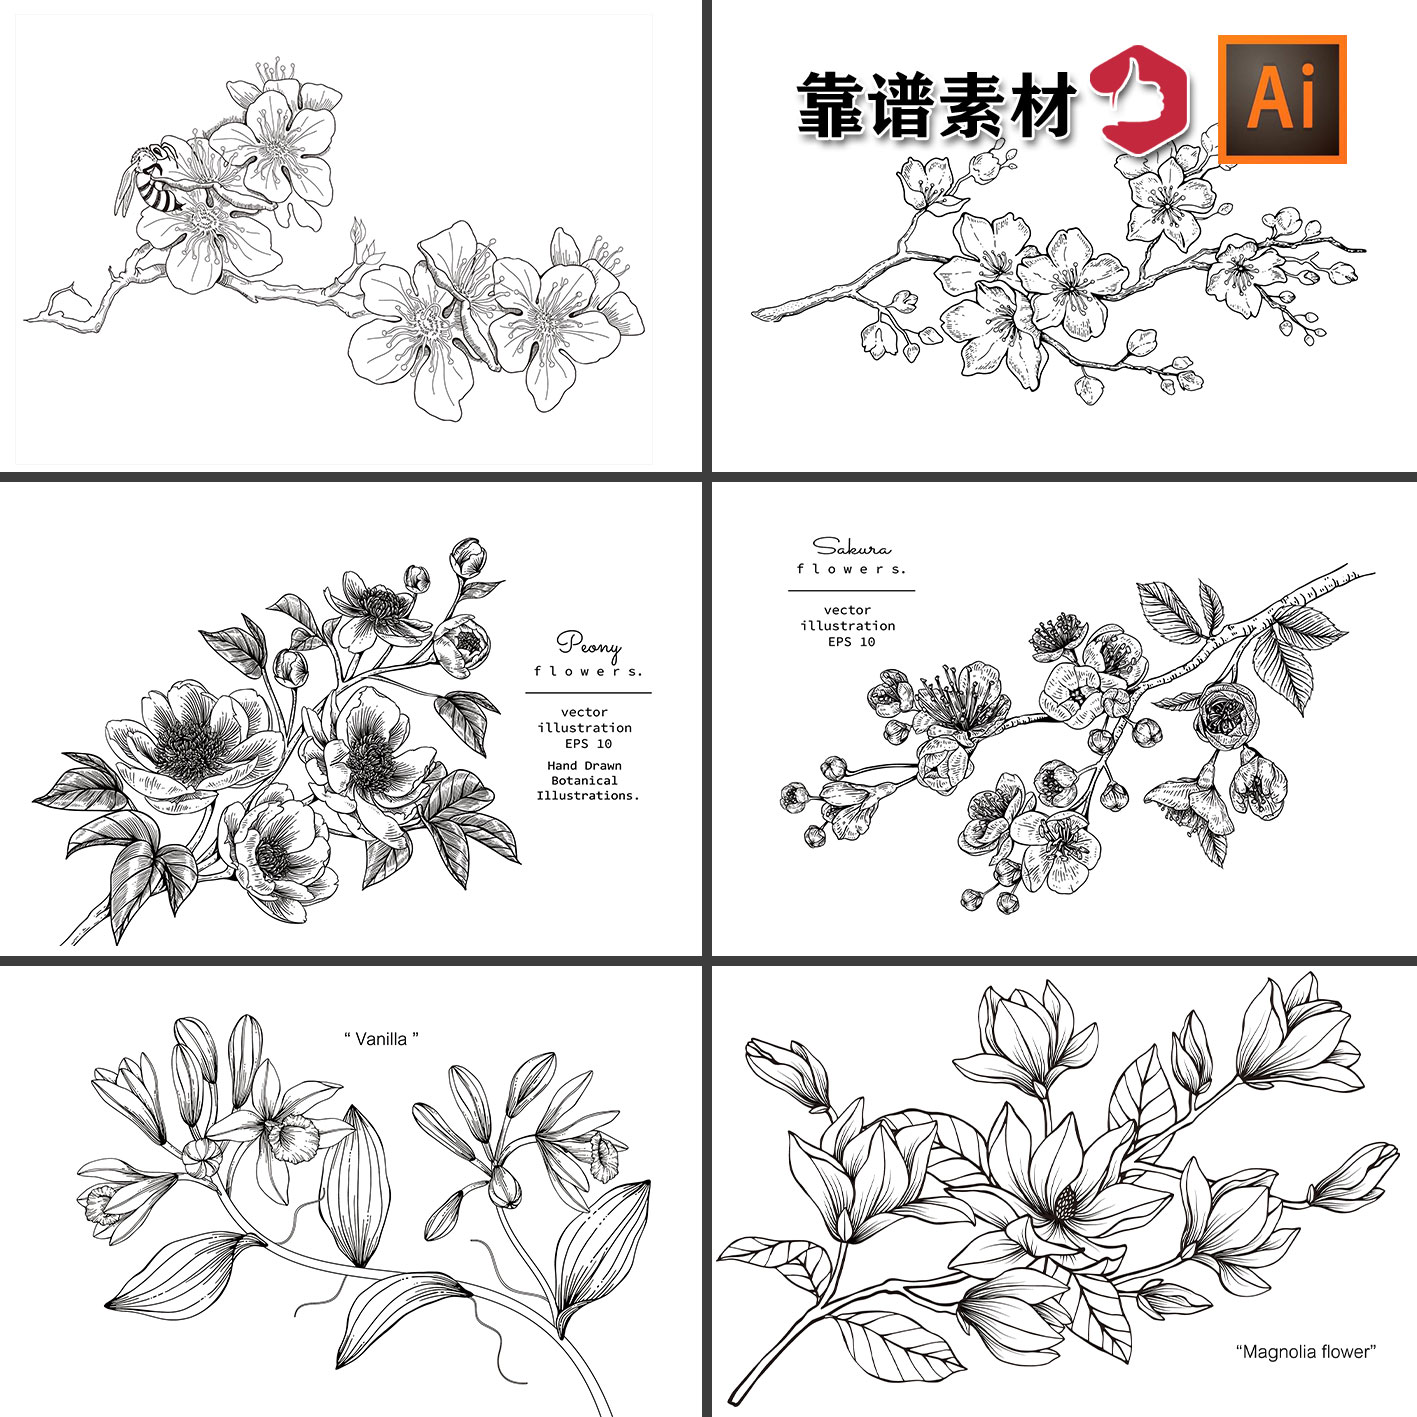 黑白描边线条线描玉兰花牡丹花鲜花花朵装饰画AI矢量设计素材